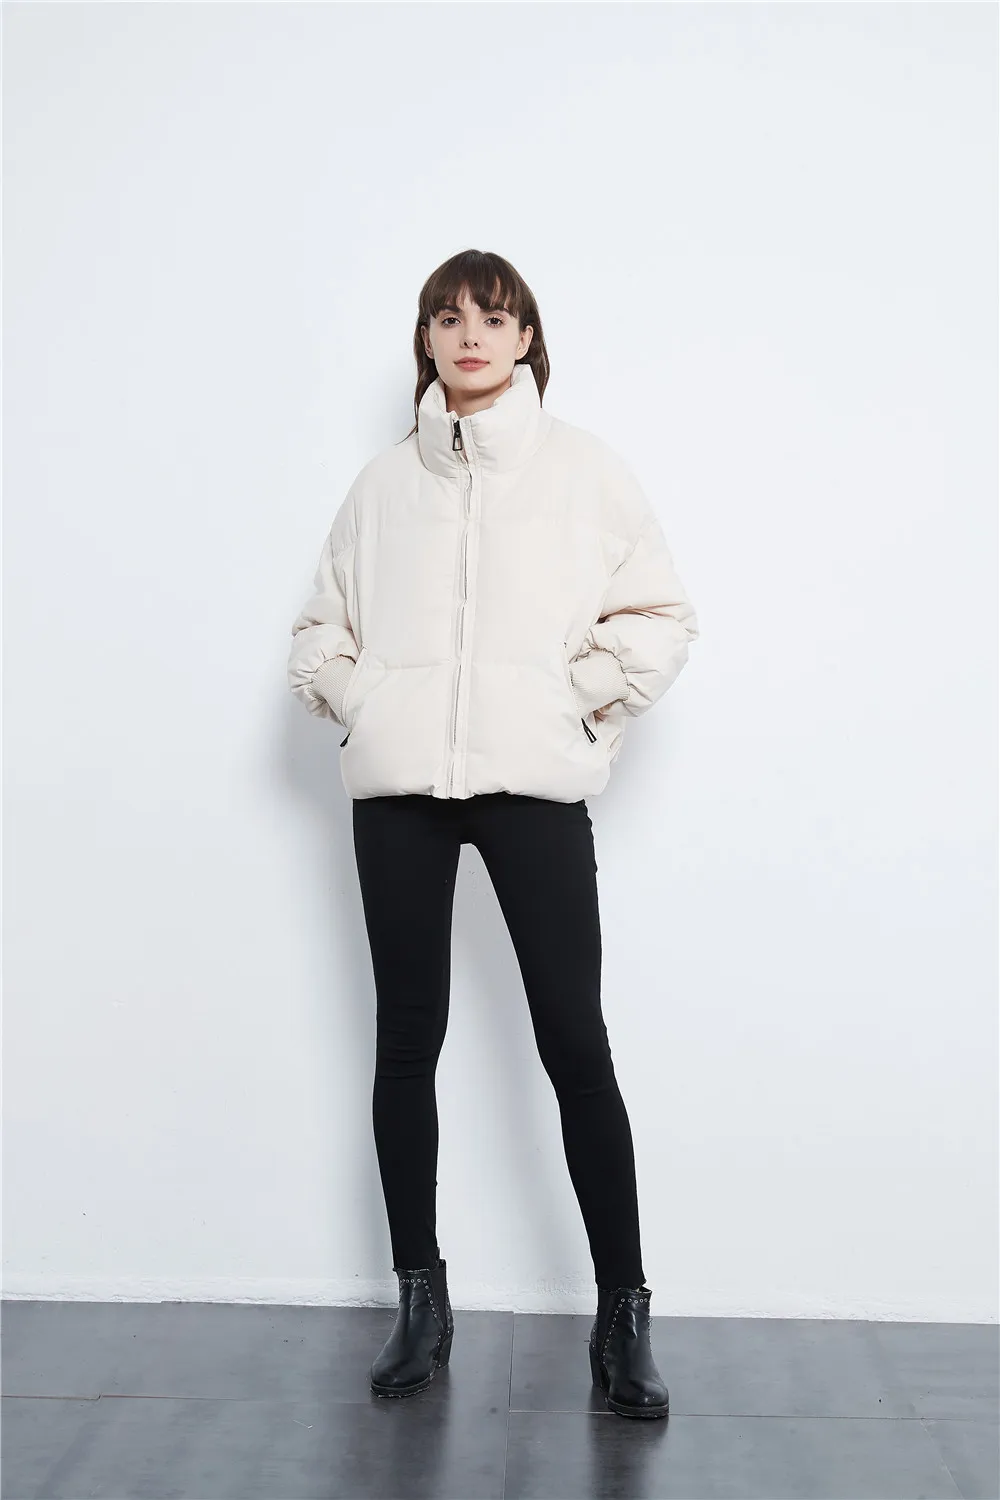 KONDALA Autumn Winter Za Women Jackets Thicken Streetwear Oversized Parkas Long Batwing Sleeve Pockets Female Coats Mujer Tops